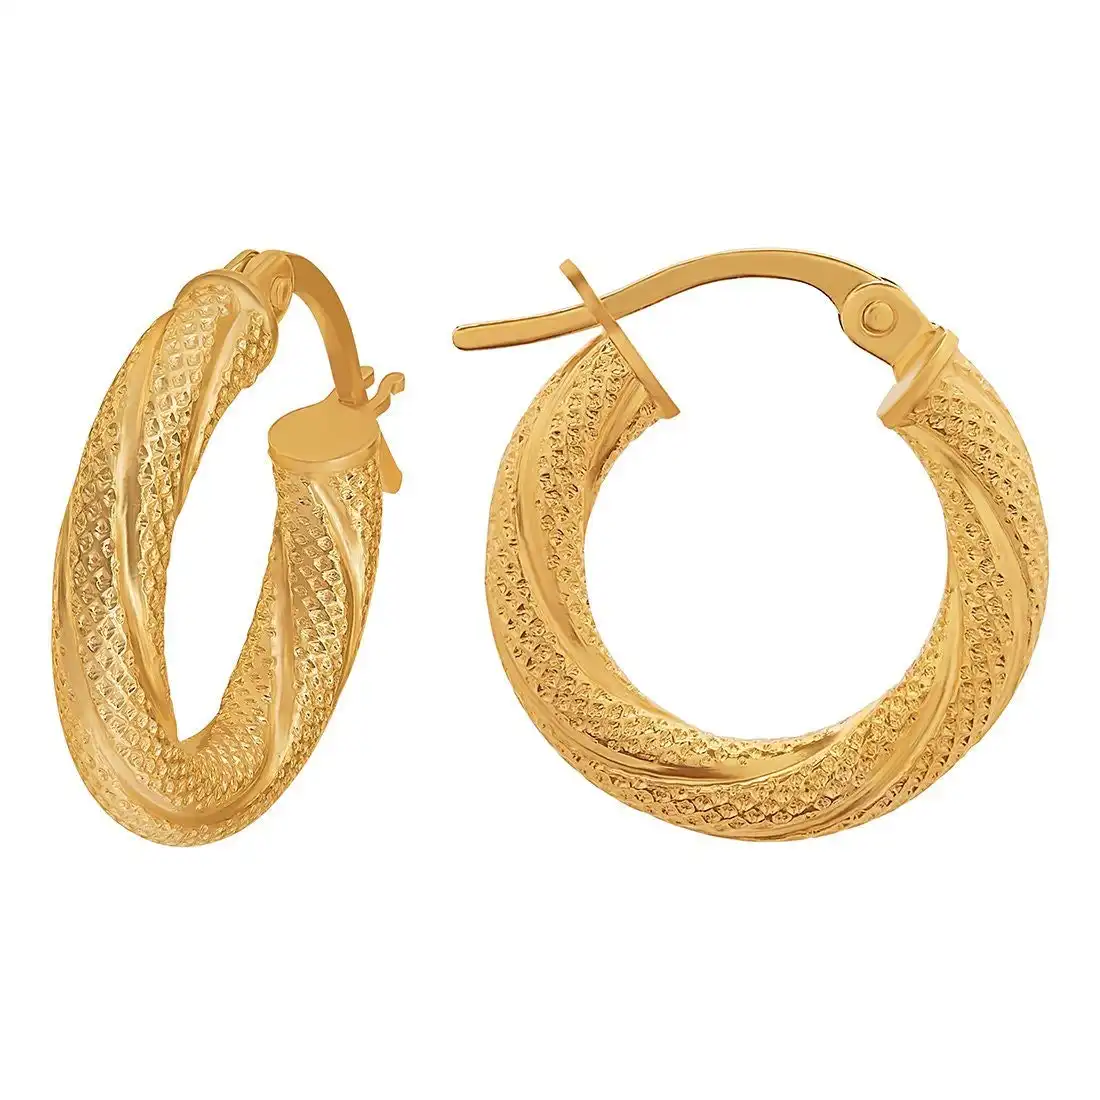 9ct Yellow Gold Patterned Twist Hoop Earrings 30mm